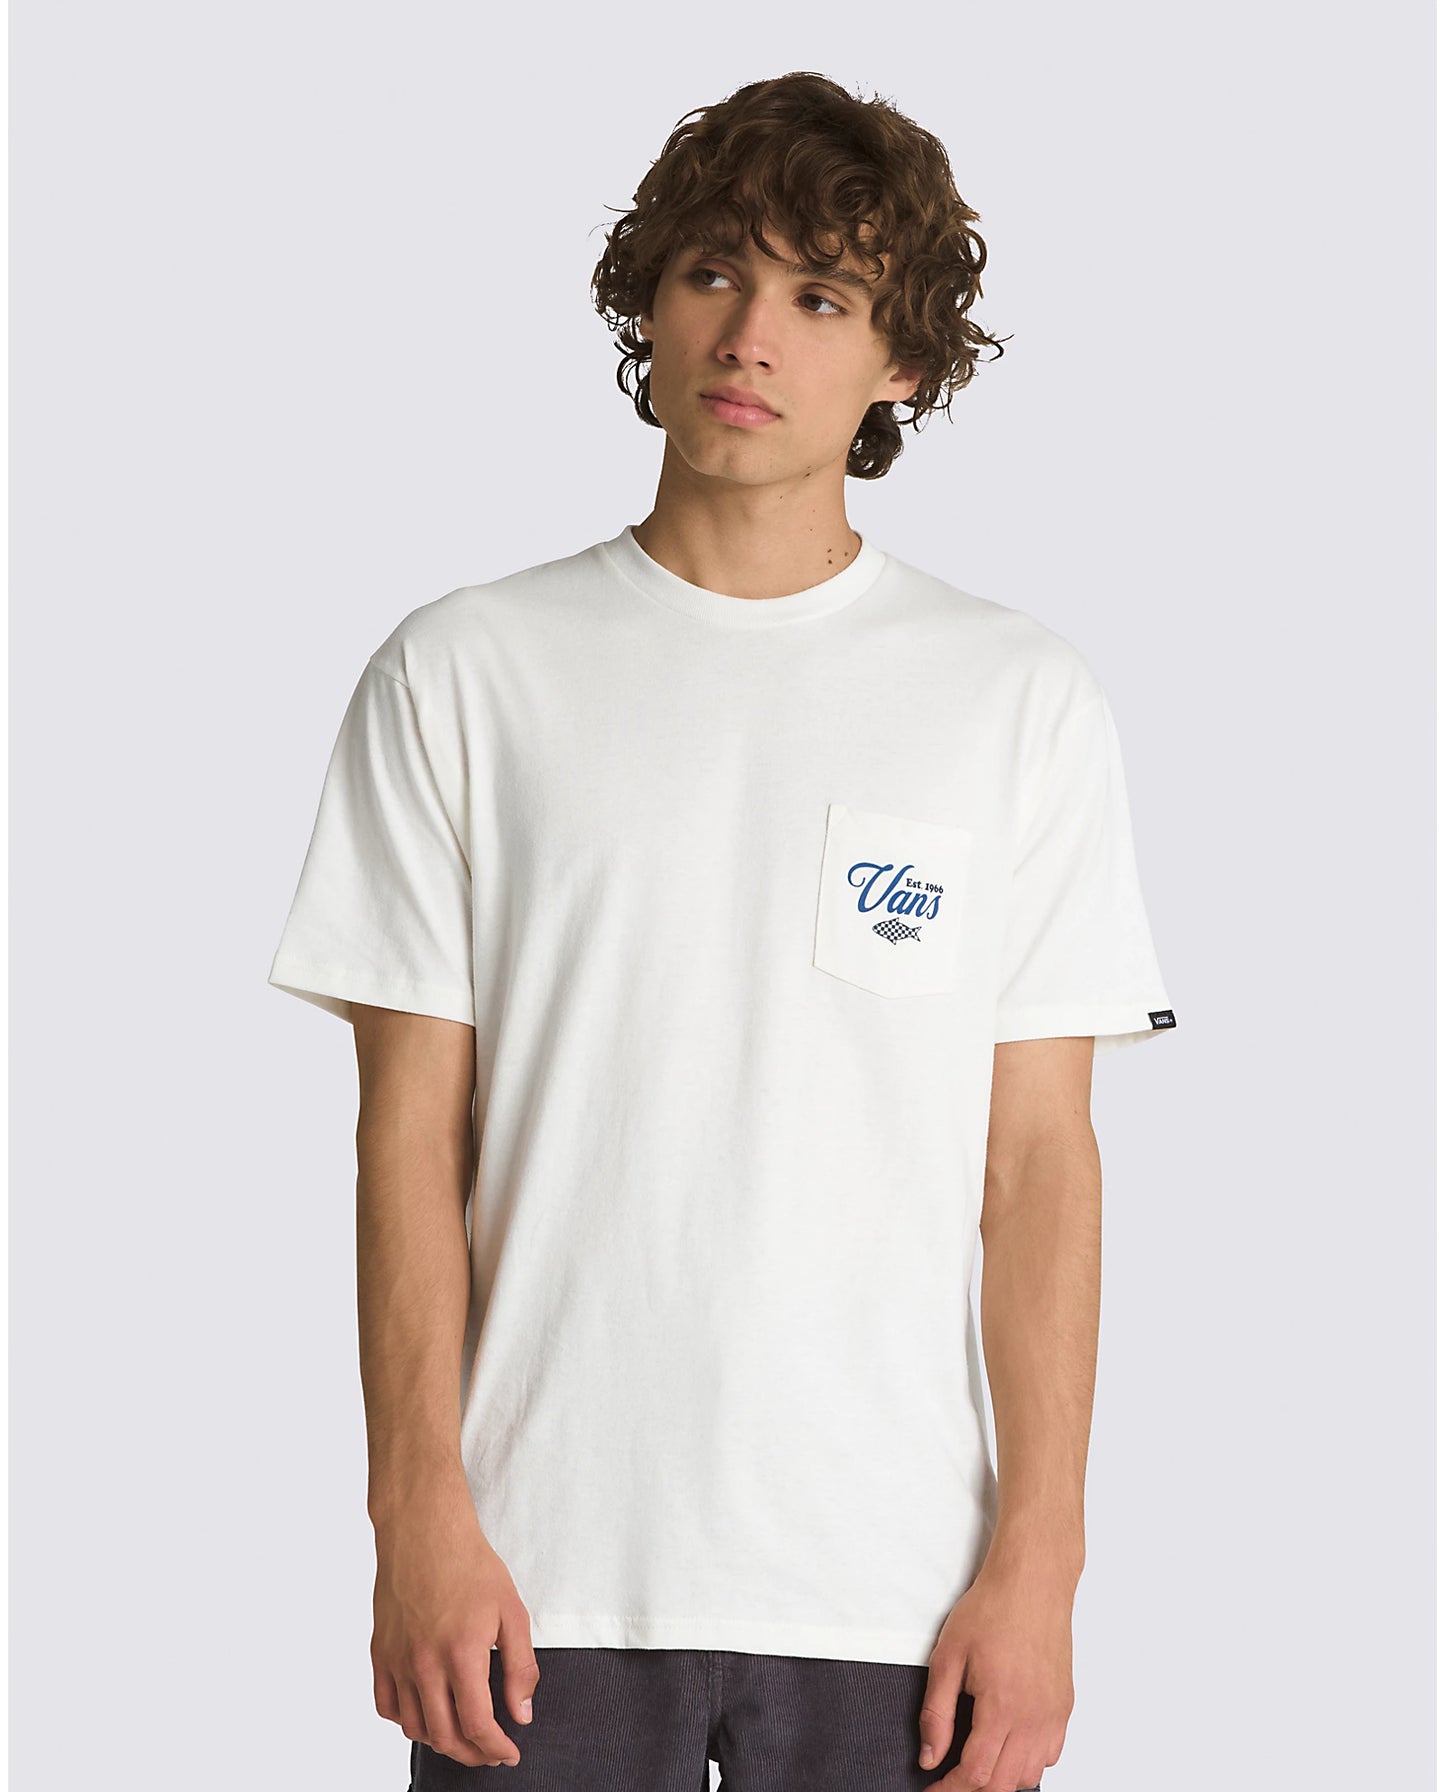 VANS Fishing Club Pocket Tee-Shirt - Off White Mens T Shirt